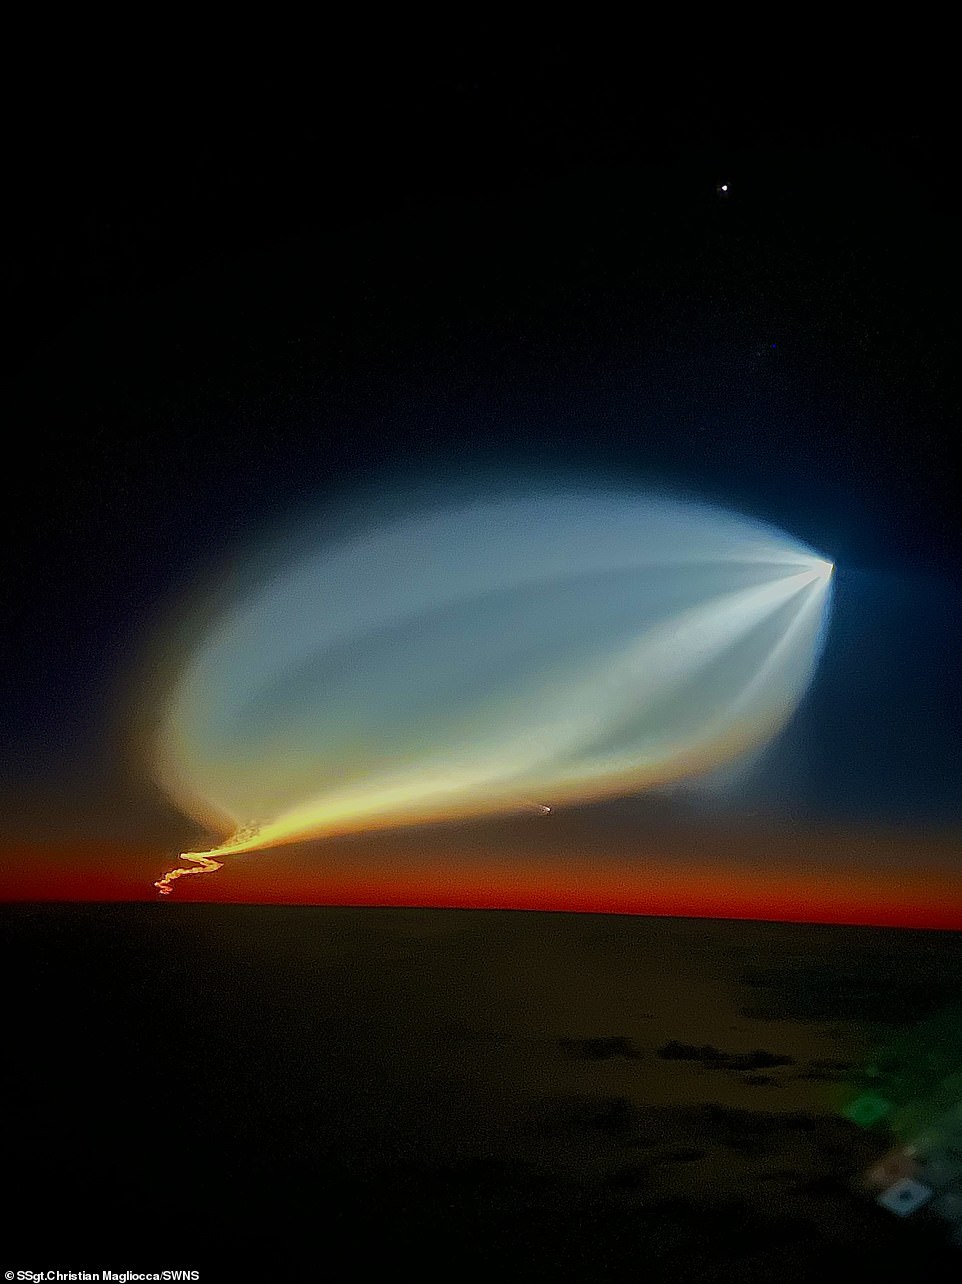 Briljant: het ziet er misschien vreemd, UFO-achtig uit, maar het opbloeien van licht aan de hemel maakt eigenlijk deel uit van de gevolgen van de lancering van de SpaceX-raket